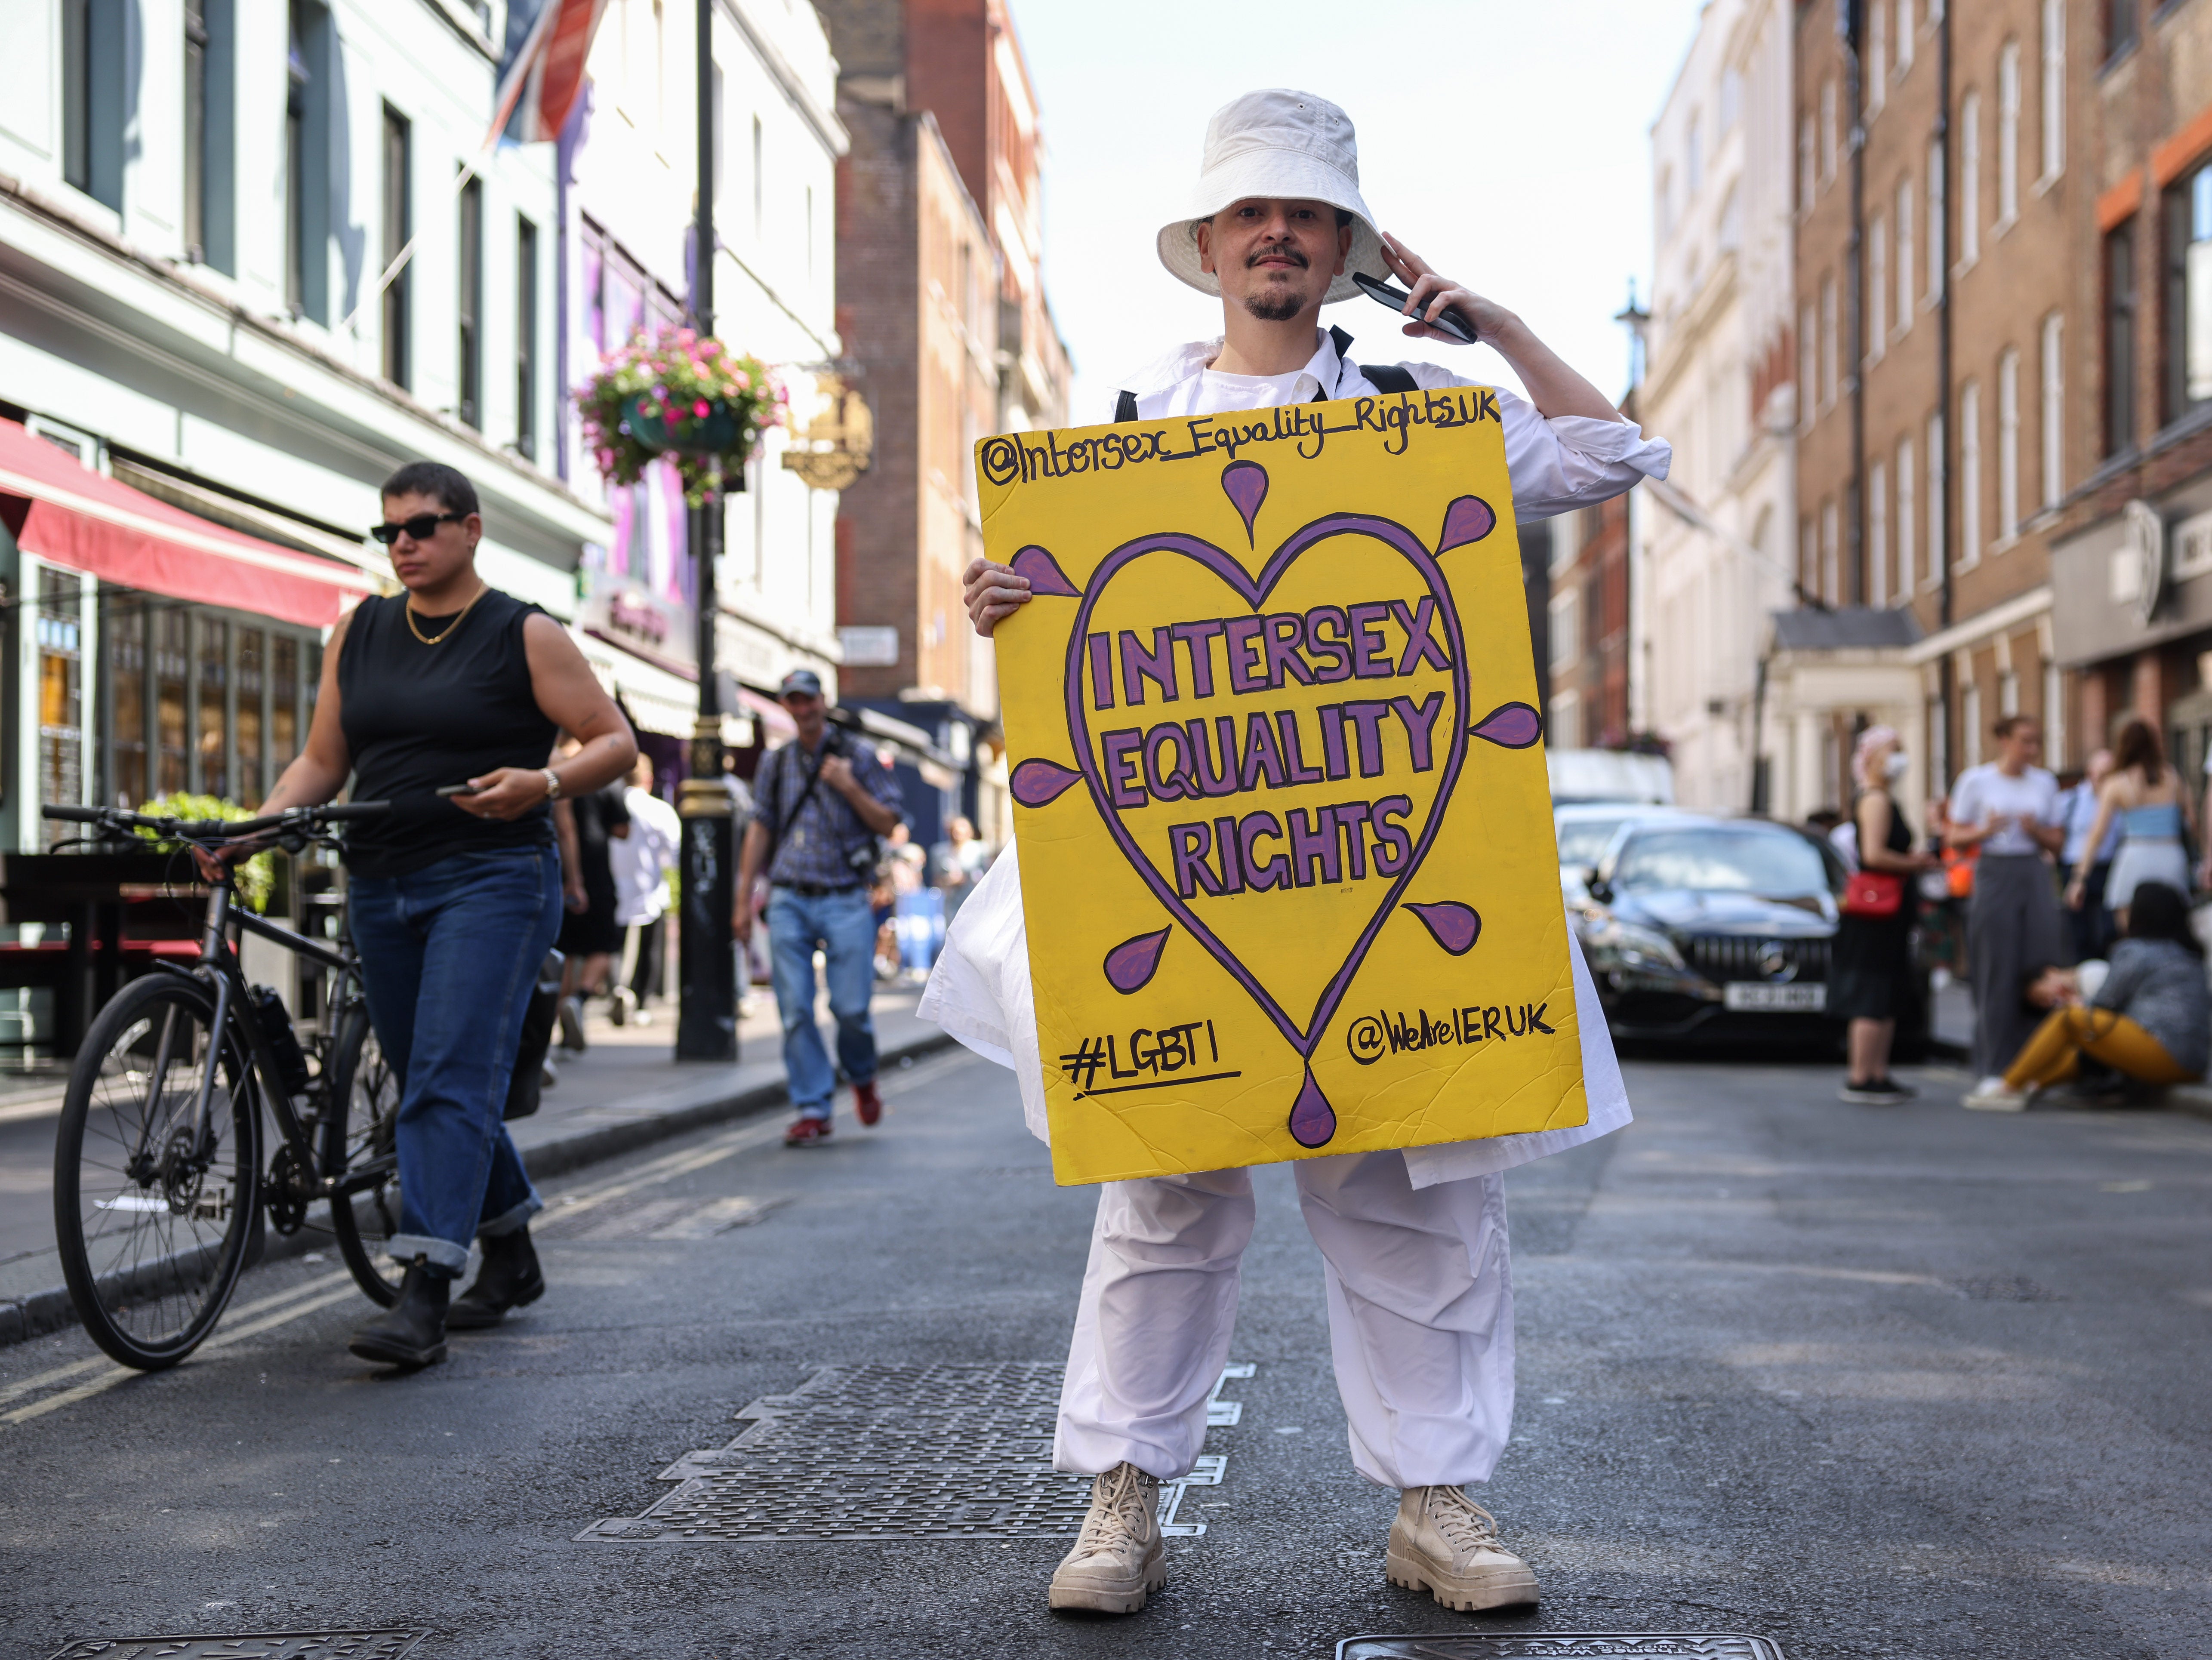 Intersex campaigner Valentino Vecchietti at the London Trans Pride protester in July 2022, England, UK